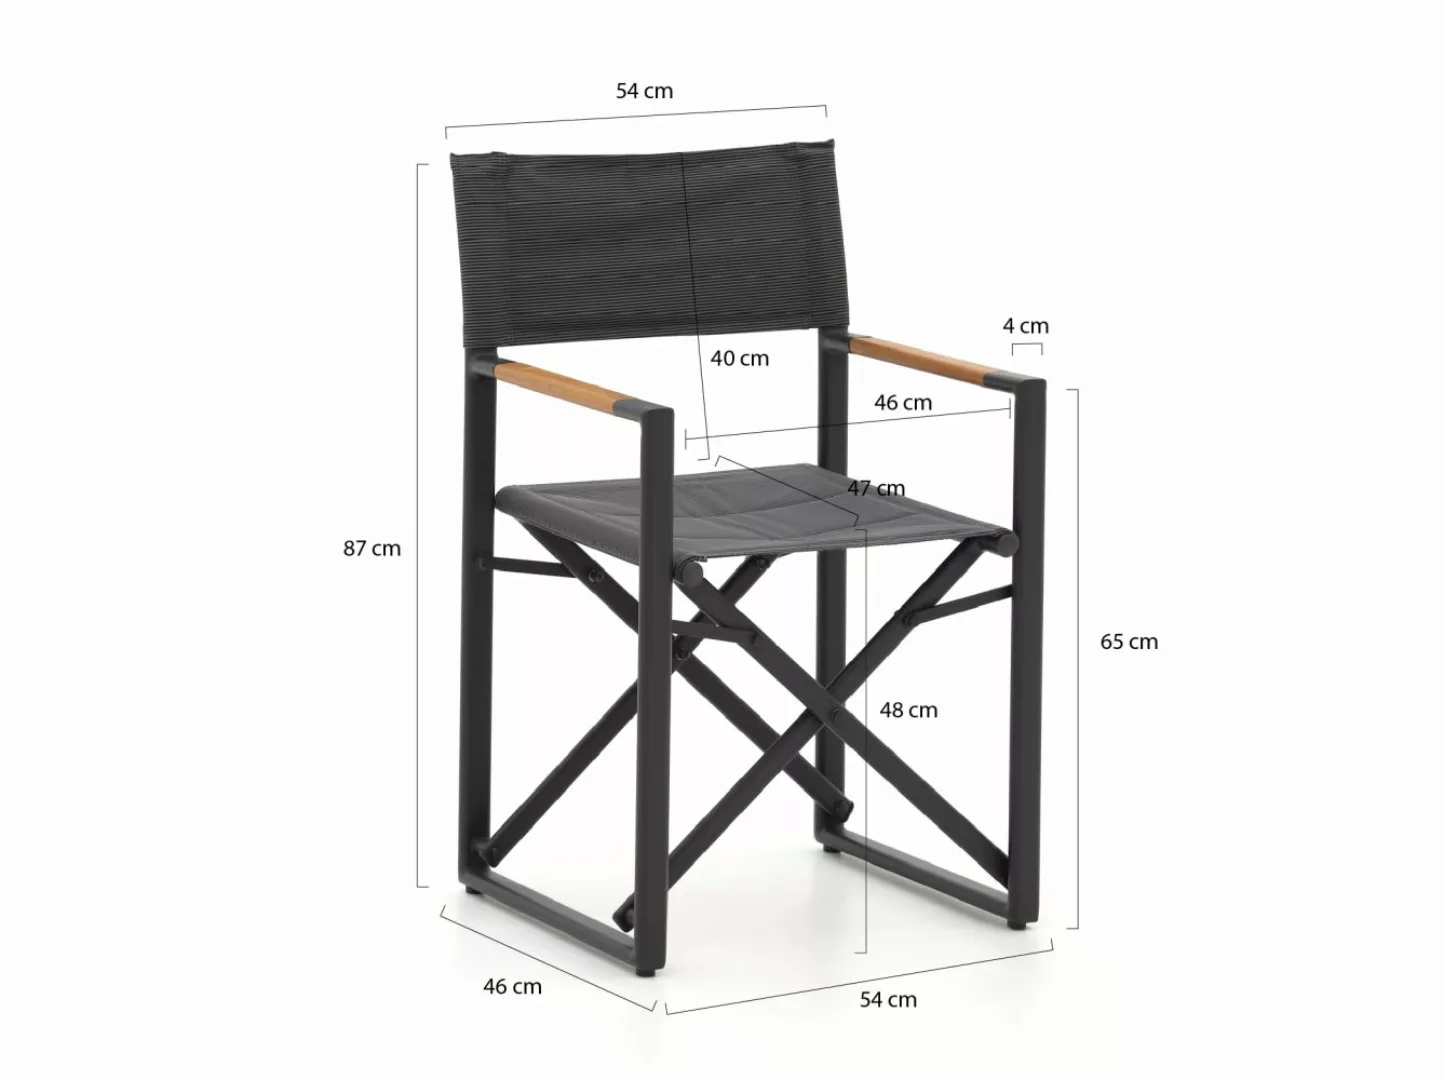 Bellagio Pasolini/Menzano 160 cm Gartenmöbel-Set 5-teilig klappbar günstig online kaufen